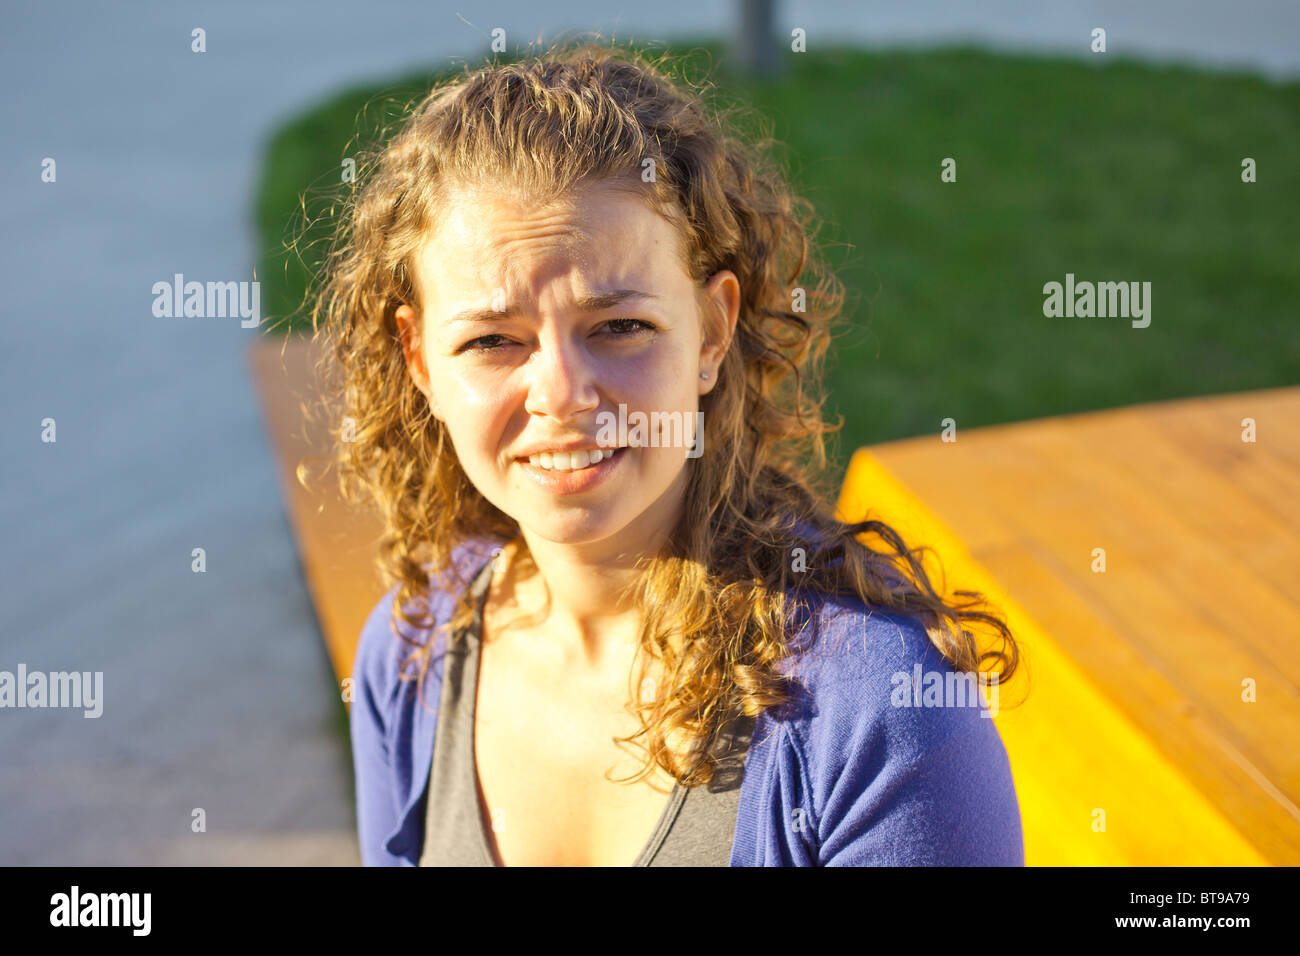 Portrait de jeune femme avec de longs cheveux bruns bouclés Banque D'Images